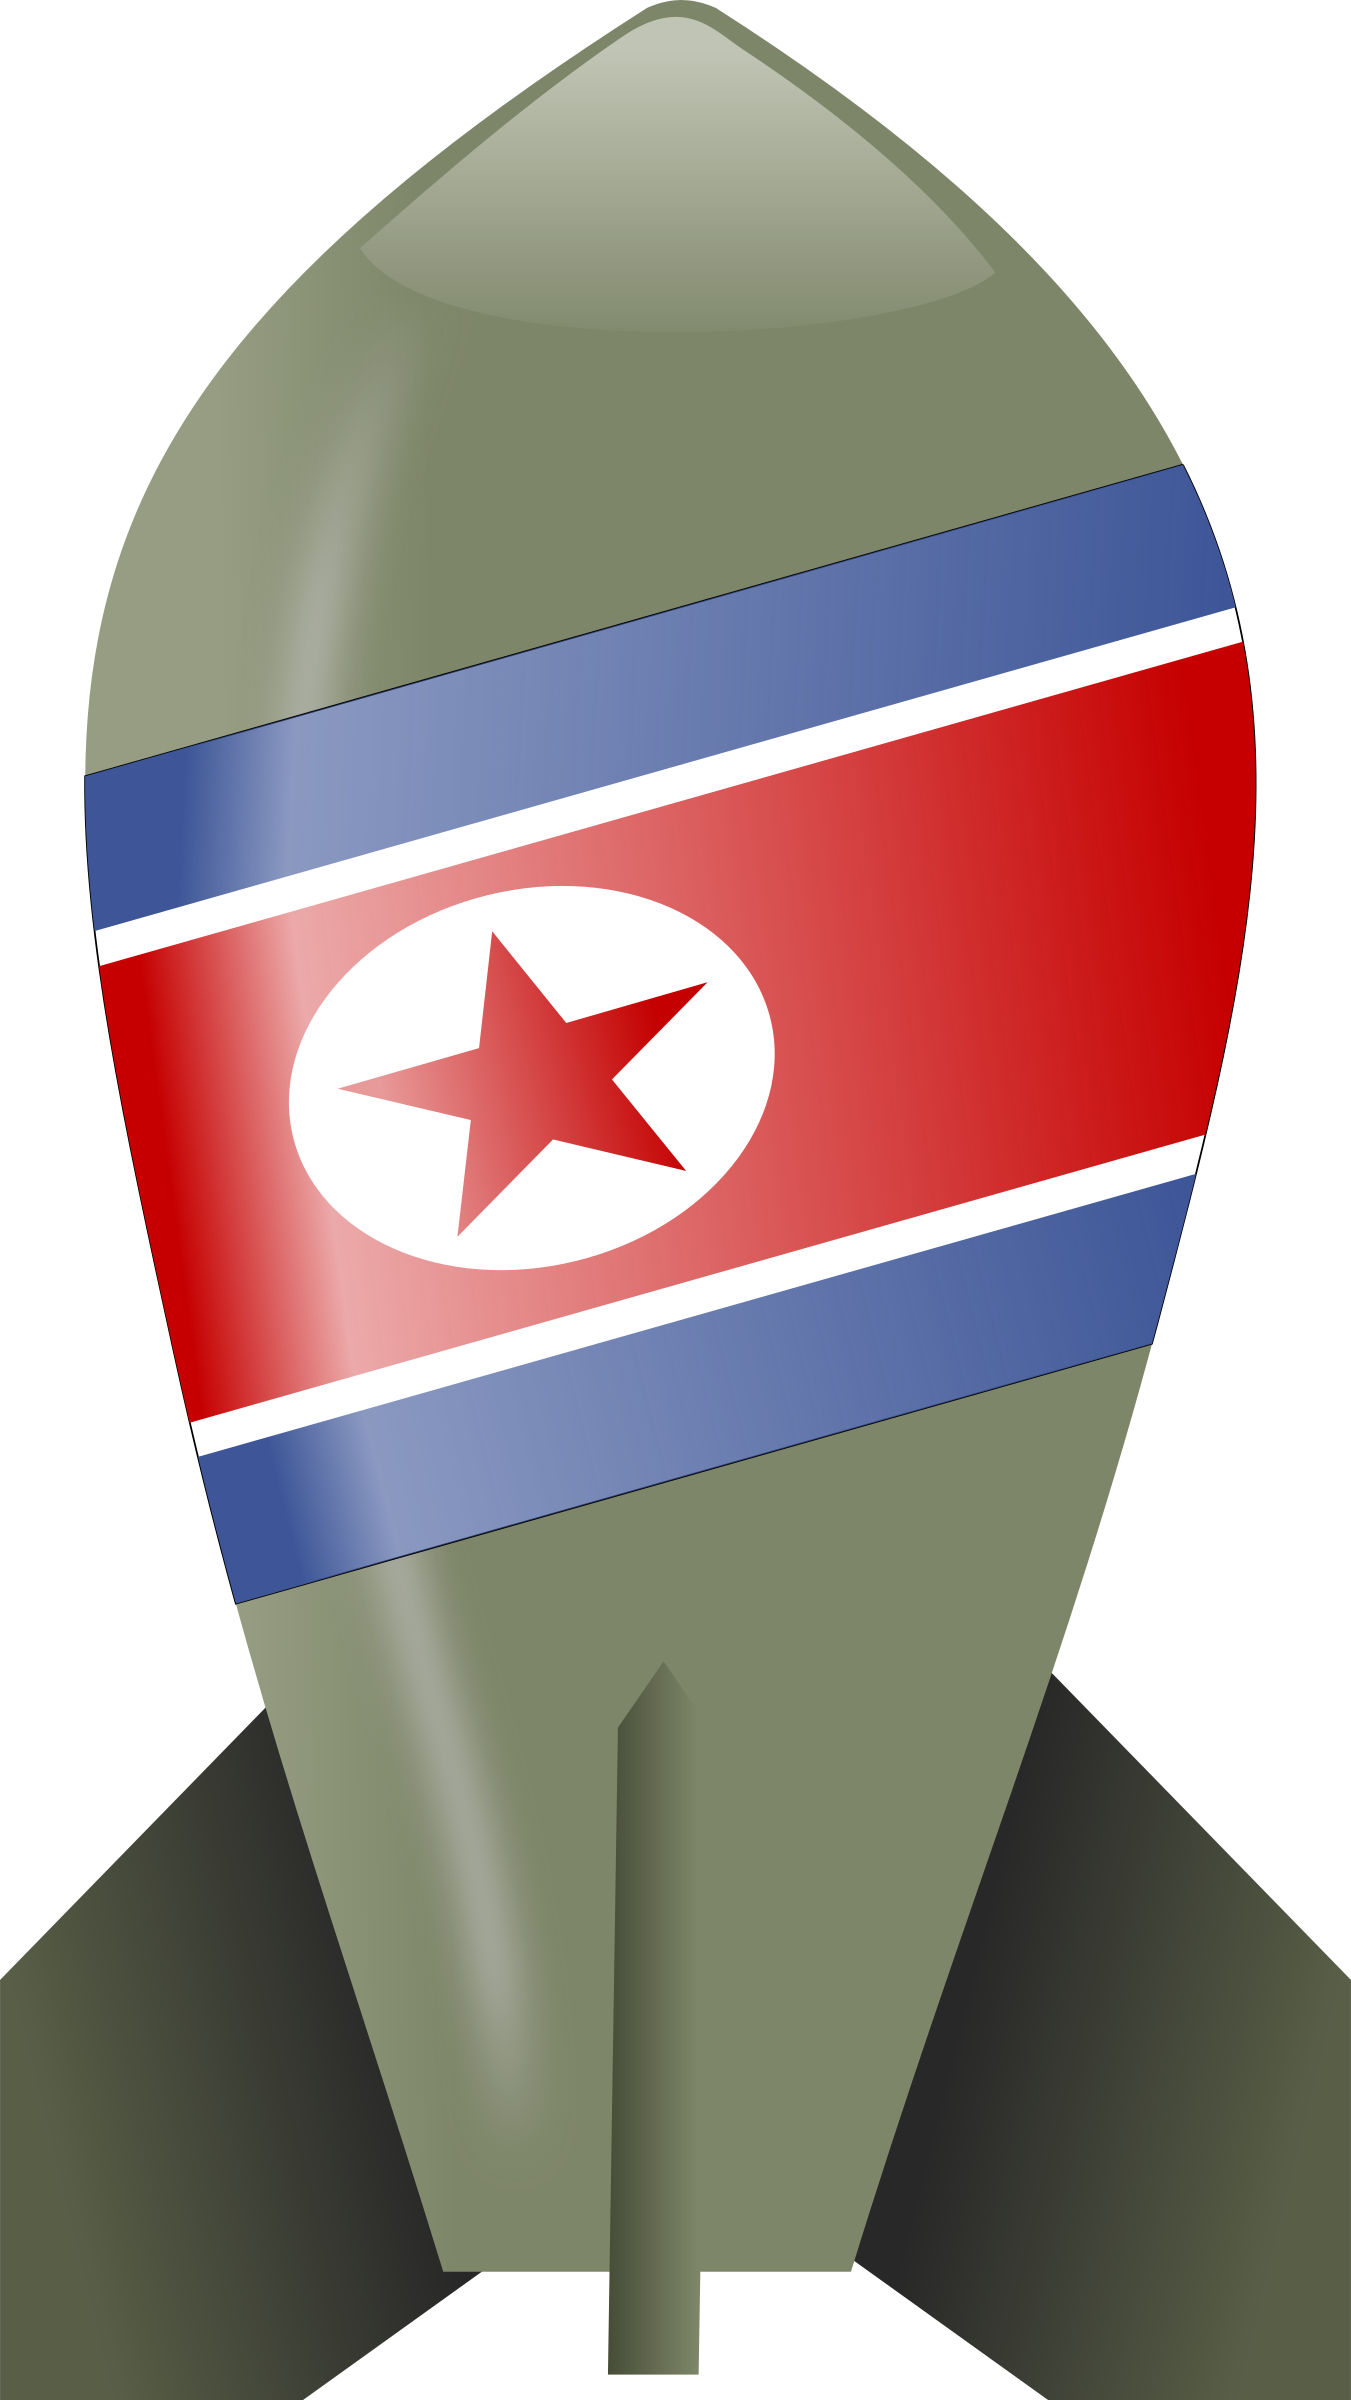 Big Image - North Korea Flag Bomb (1351x2400)